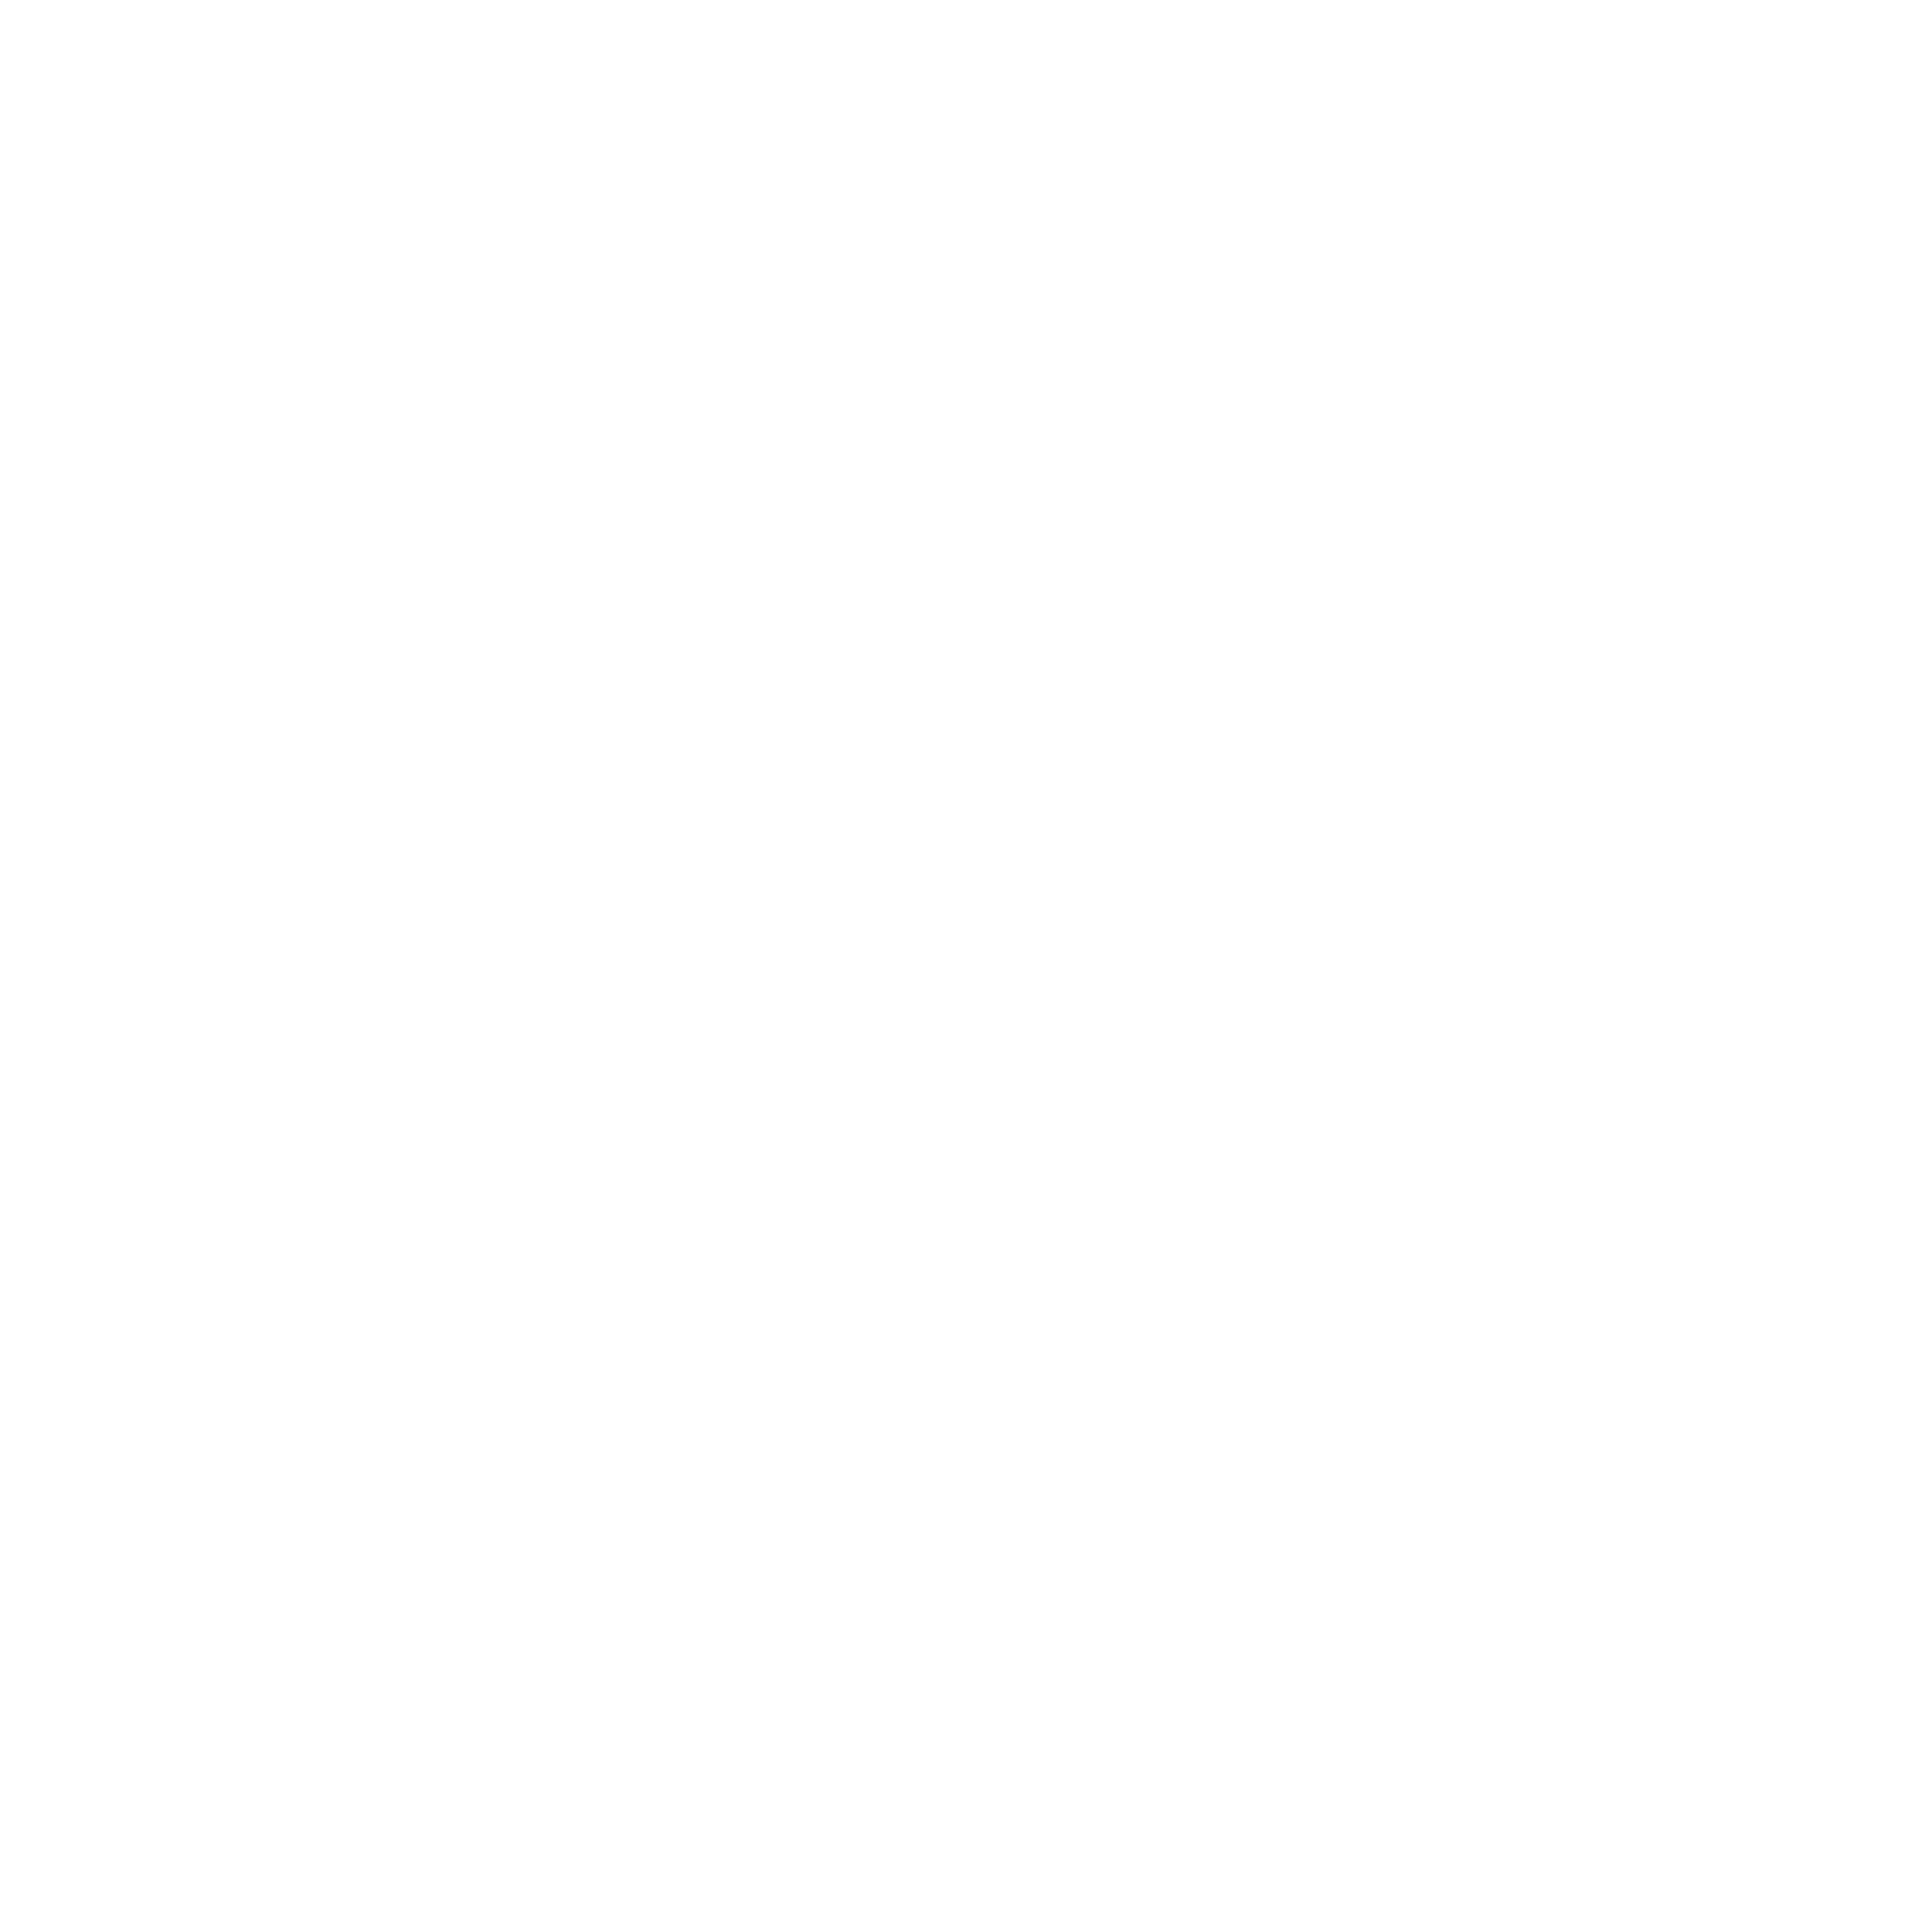 Lob Logo - LOB Logo PNG Transparent & SVG Vector